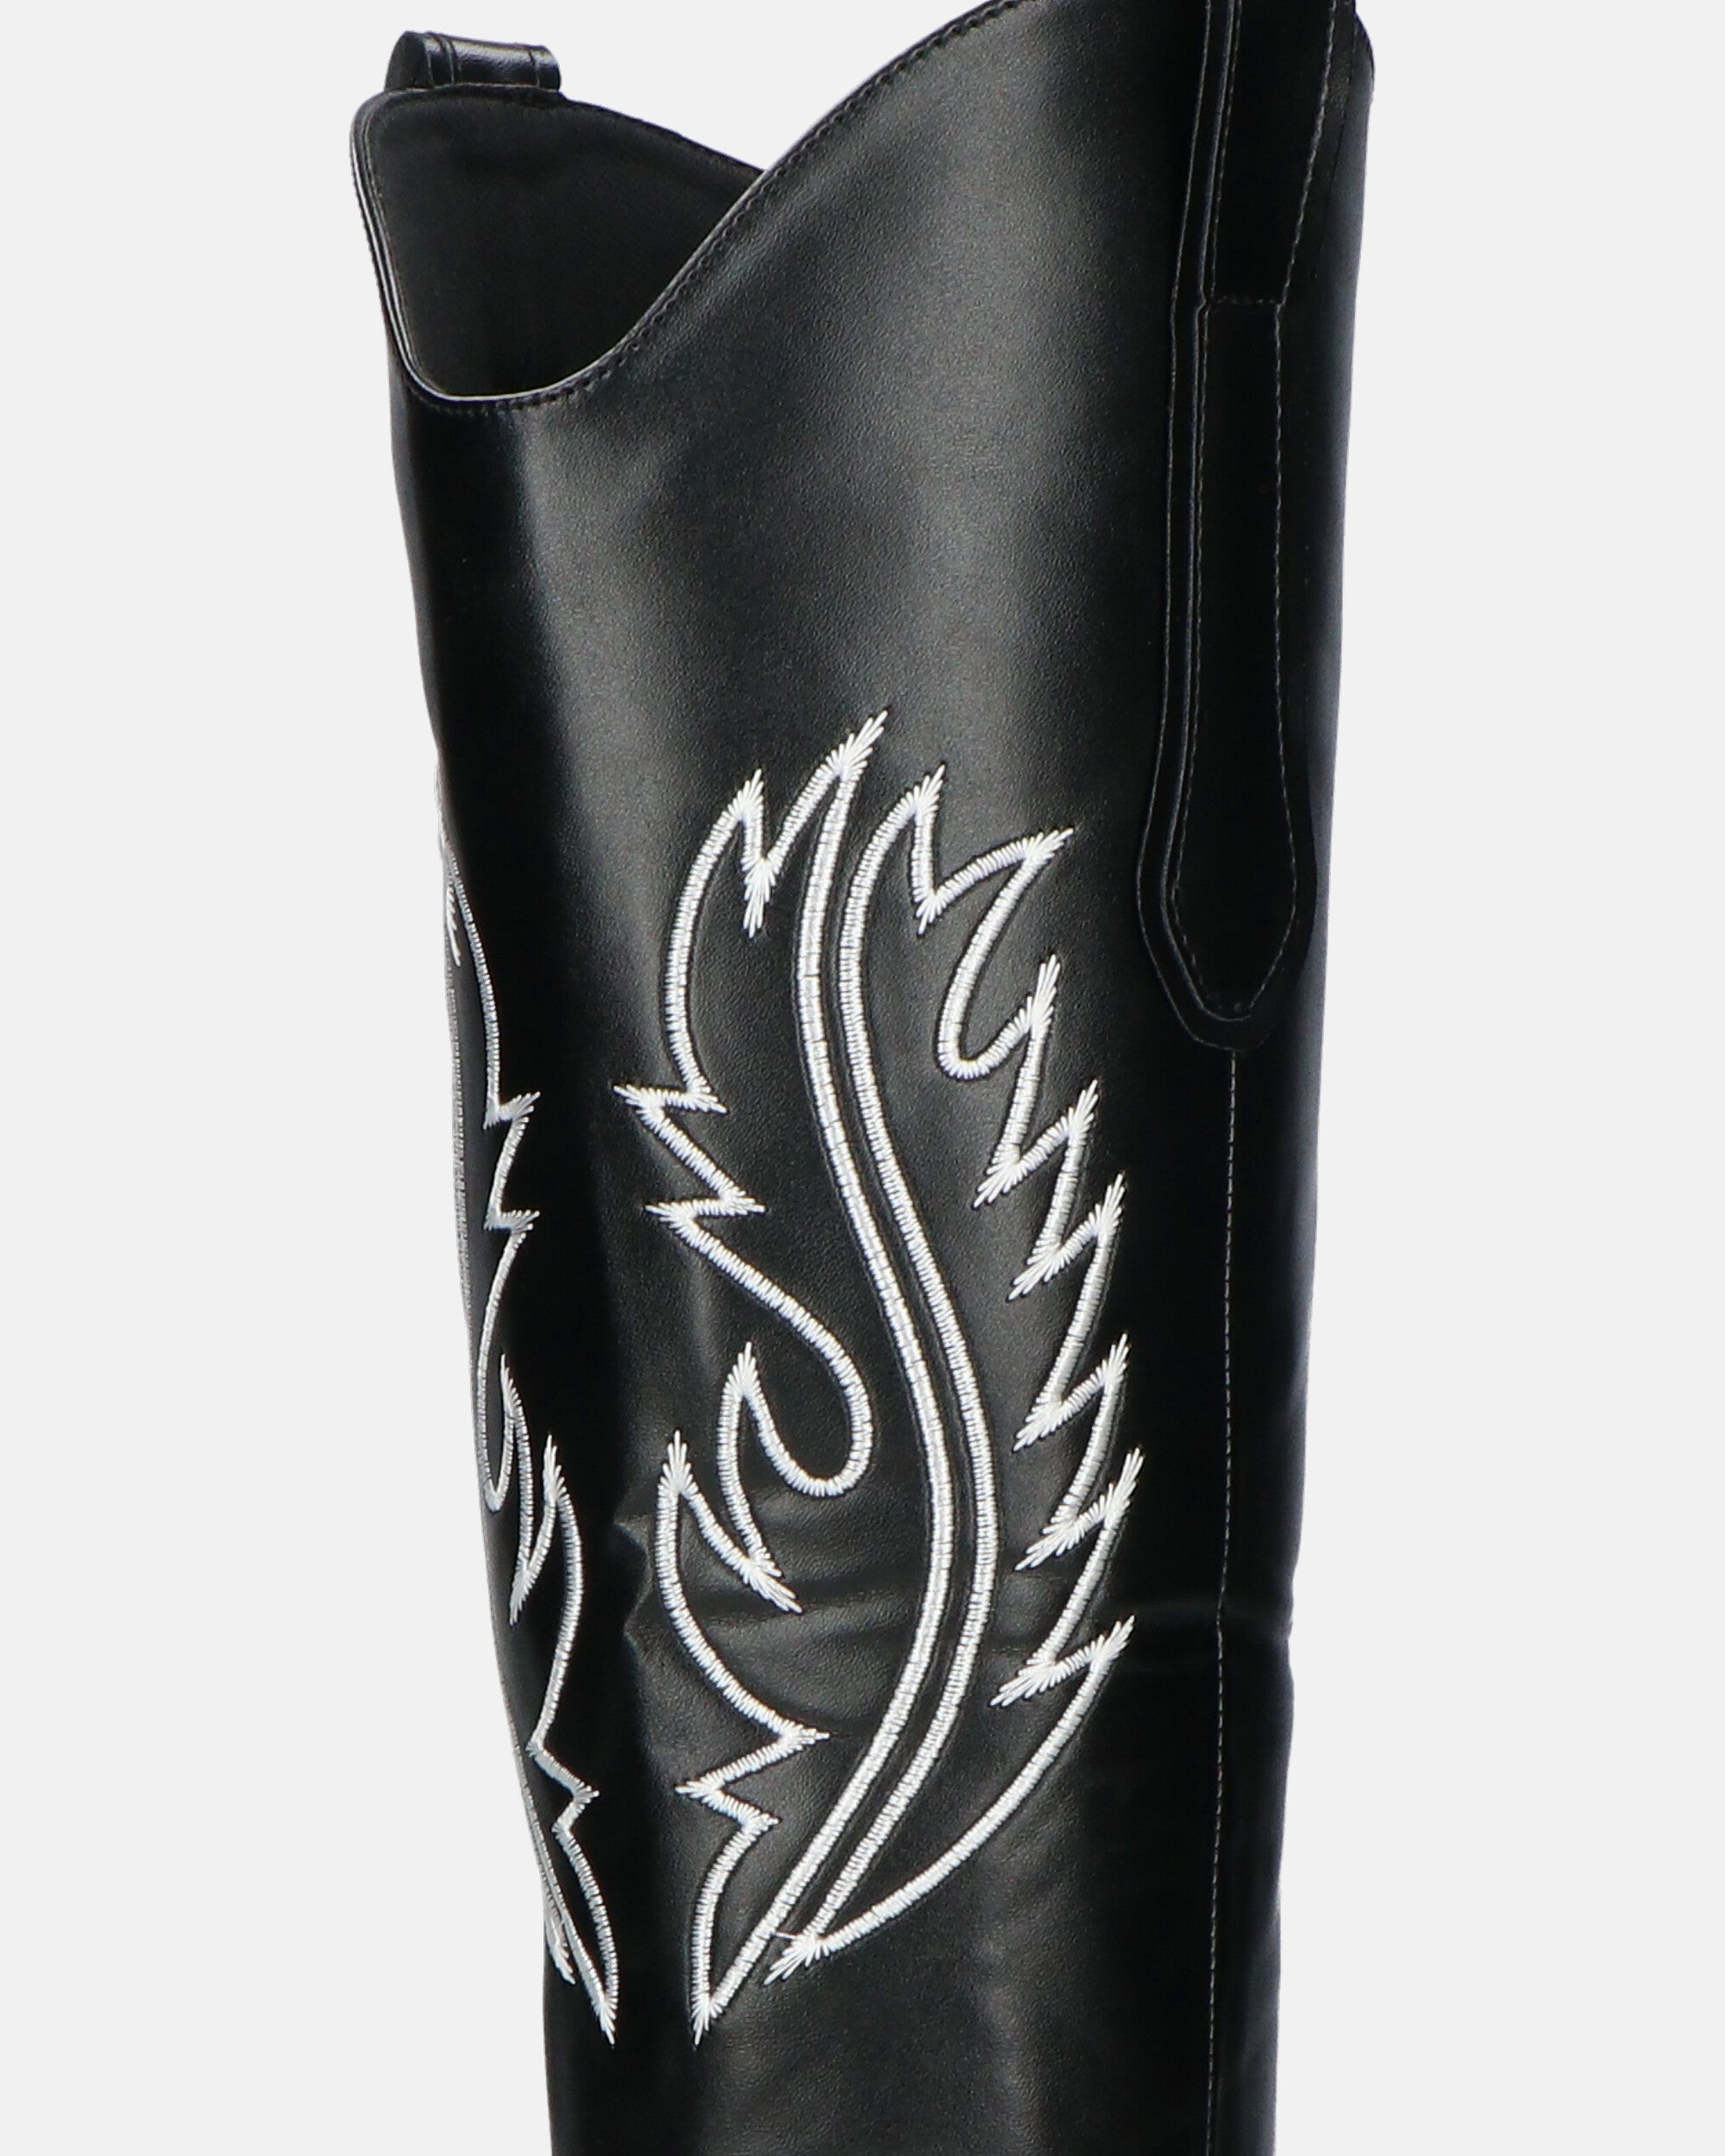 2 en 1 - CAMILA - boots texanes à tige amovible en éco-cuir noir et broderie blanche